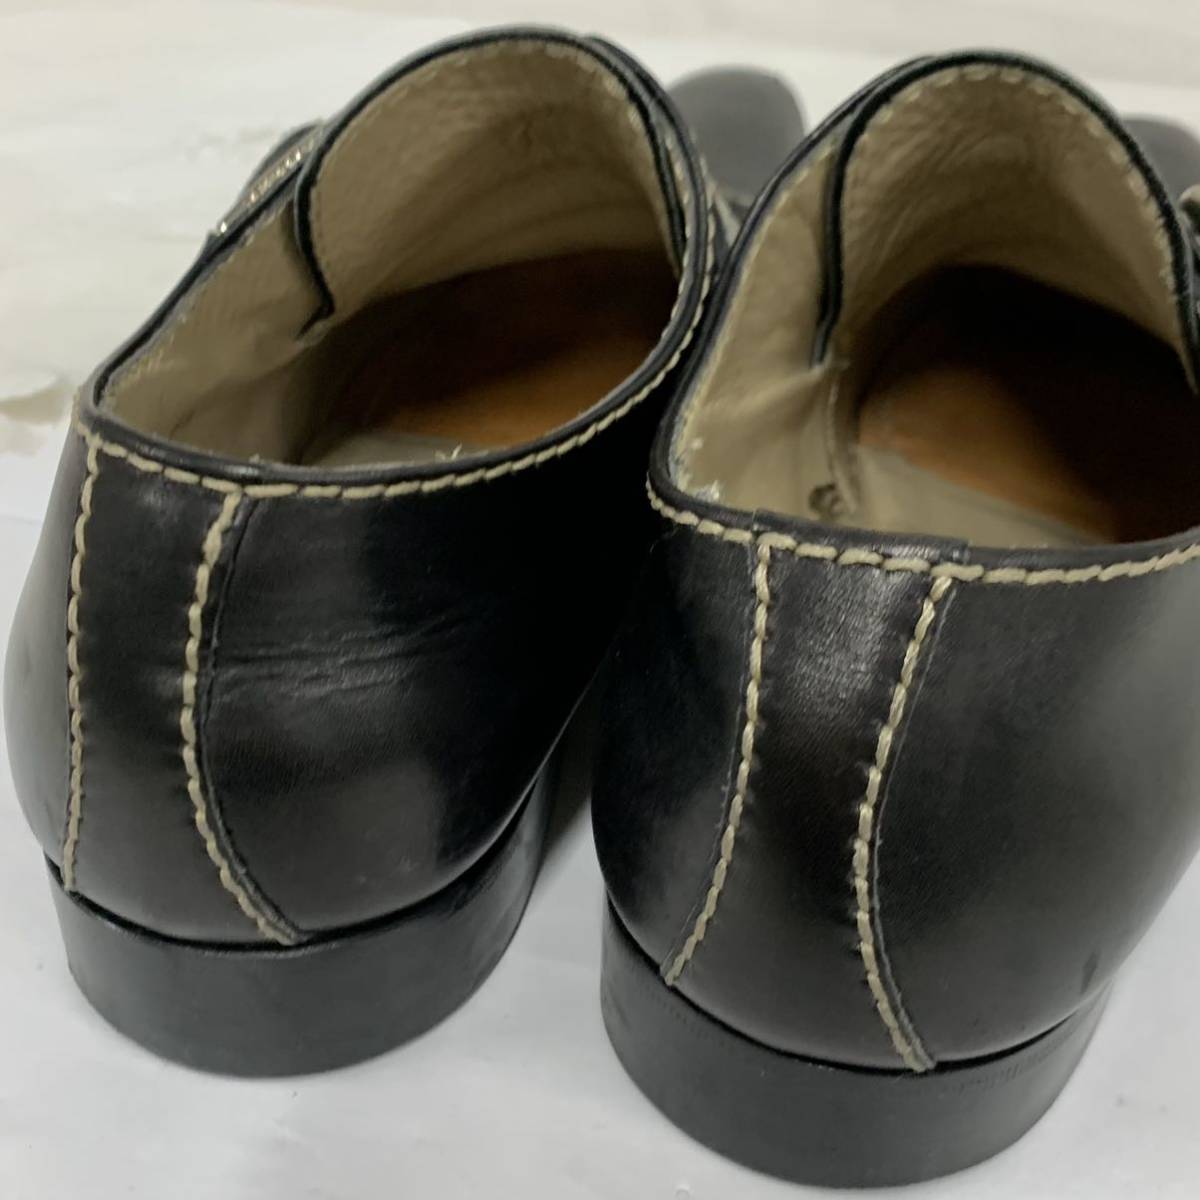 ドルチェアンドガッバーナ DOLCE&GABBANA シューズ レザー 黒 メンズ 靴 722 1206 61/2 革靴 現状品 カ4_画像5